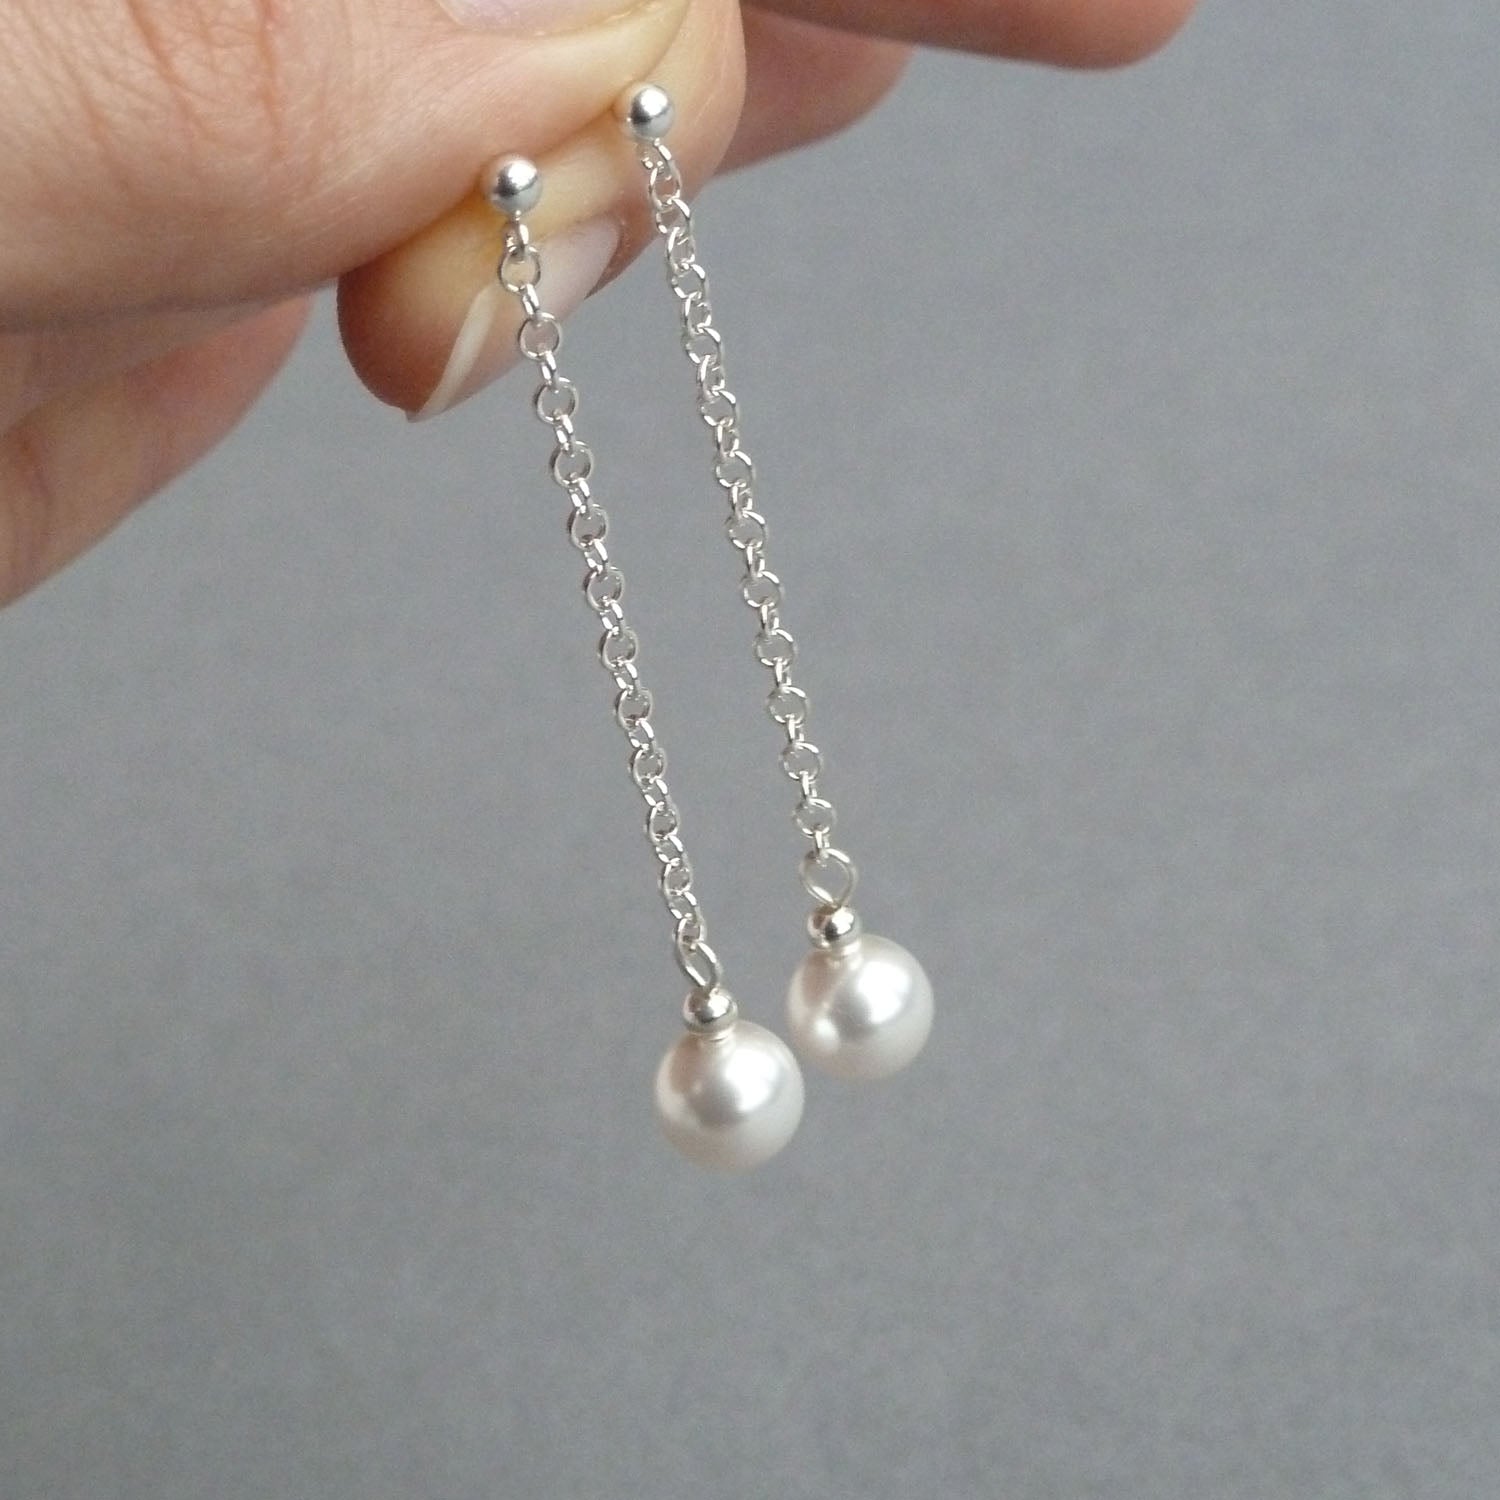 Glass Pearl Earrings - Acrylic Beads, Czech crystals Earrings